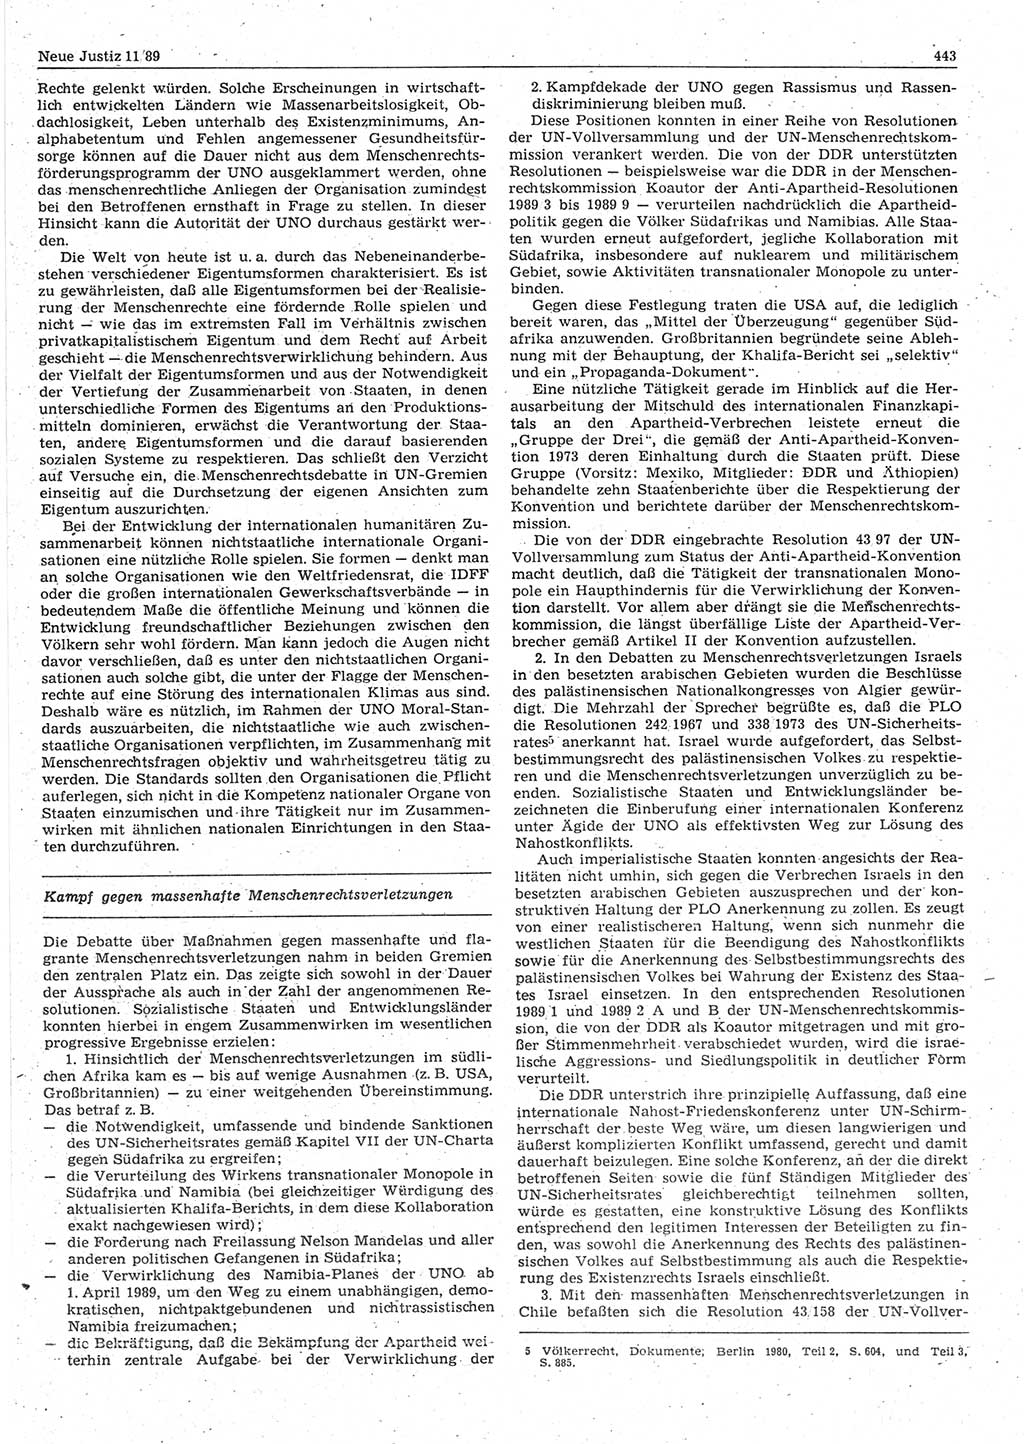 Neue Justiz (NJ), Zeitschrift für sozialistisches Recht und Gesetzlichkeit [Deutsche Demokratische Republik (DDR)], 43. Jahrgang 1989, Seite 443 (NJ DDR 1989, S. 443)